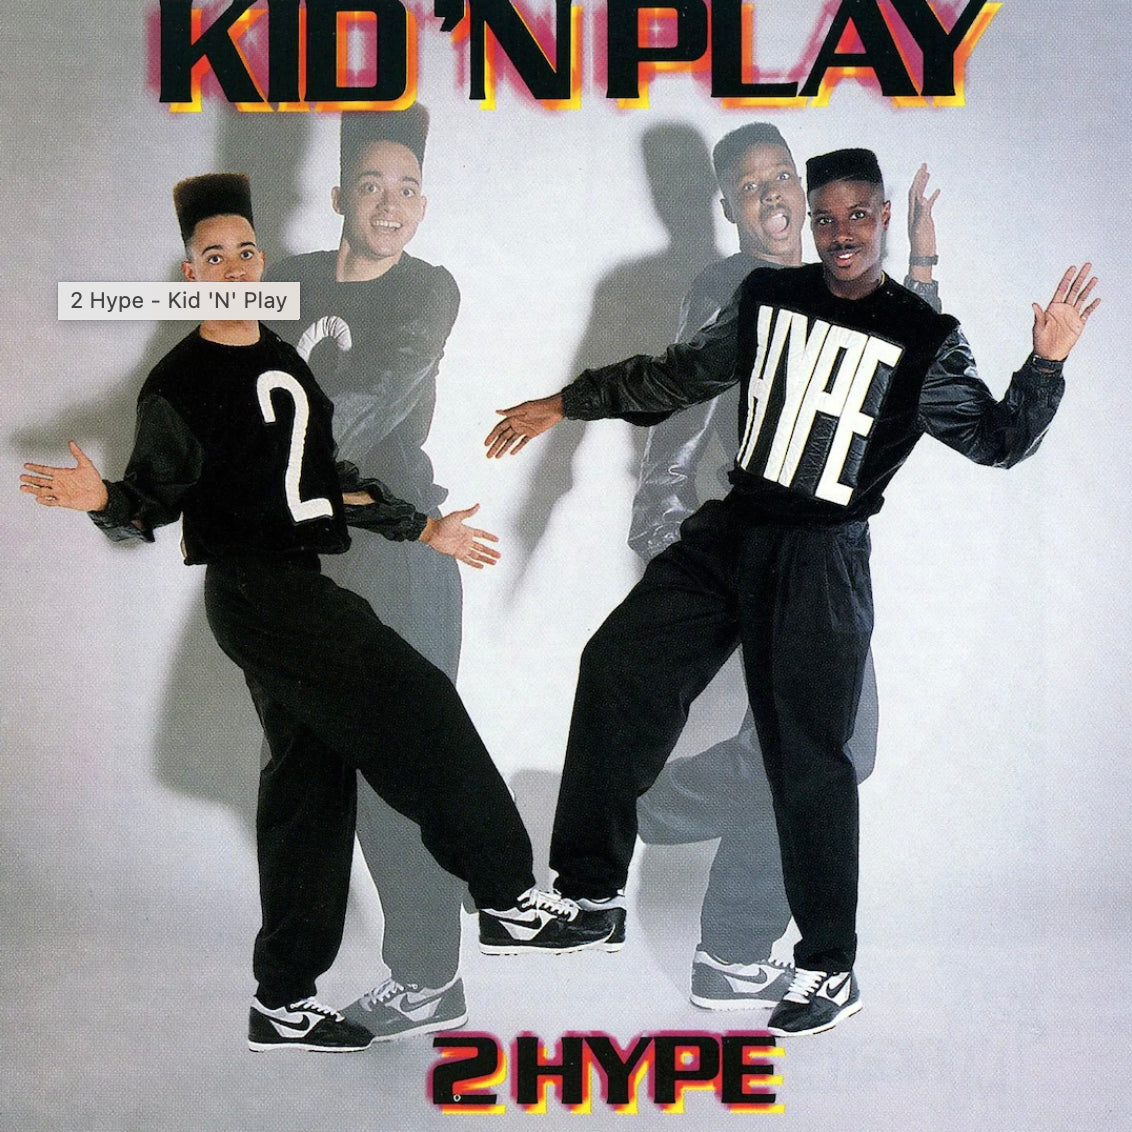 Kid 'n Play - 2 Hype